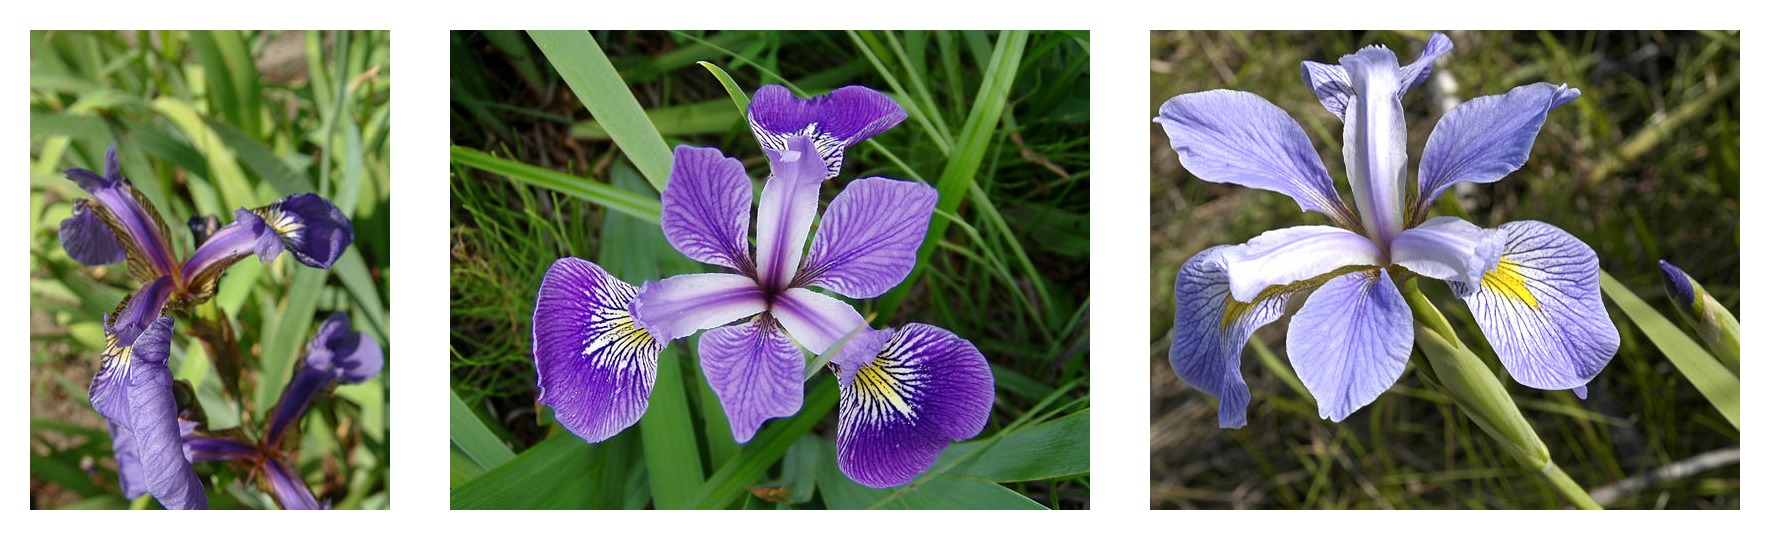 Сравнение геометрии лепестков трех видов ирисов: Iris setosa, Iris virginica и Iris versicolor.